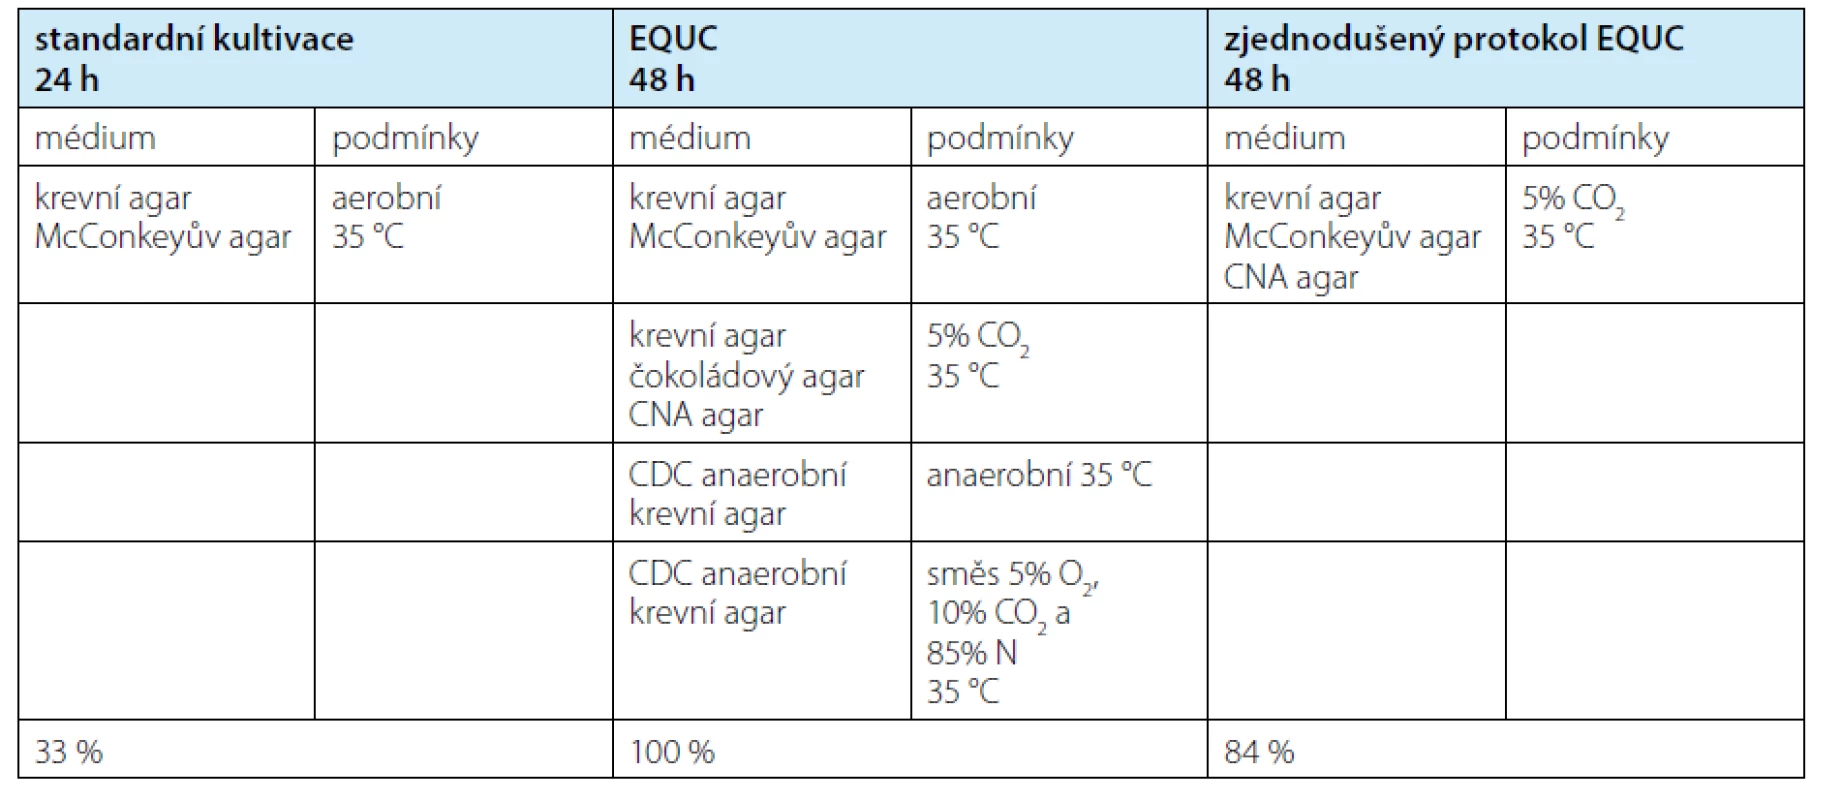 Srovnání standardní kultivace s protokolem EQUC (8) a modifikovaným protokolem EQUC (9). Poslední
řádek uvádí záchyt mikroorganismů v procentech relativně k EQUC. EQUC – rozšířená kvantitativní kultivace moči<br>
Tab. 1. Standard urine culture compared to EQUC (8) and modified EQUC (9). Last row shows detection rate
compared to EQUC. EQUC – extended quantitative urine culture